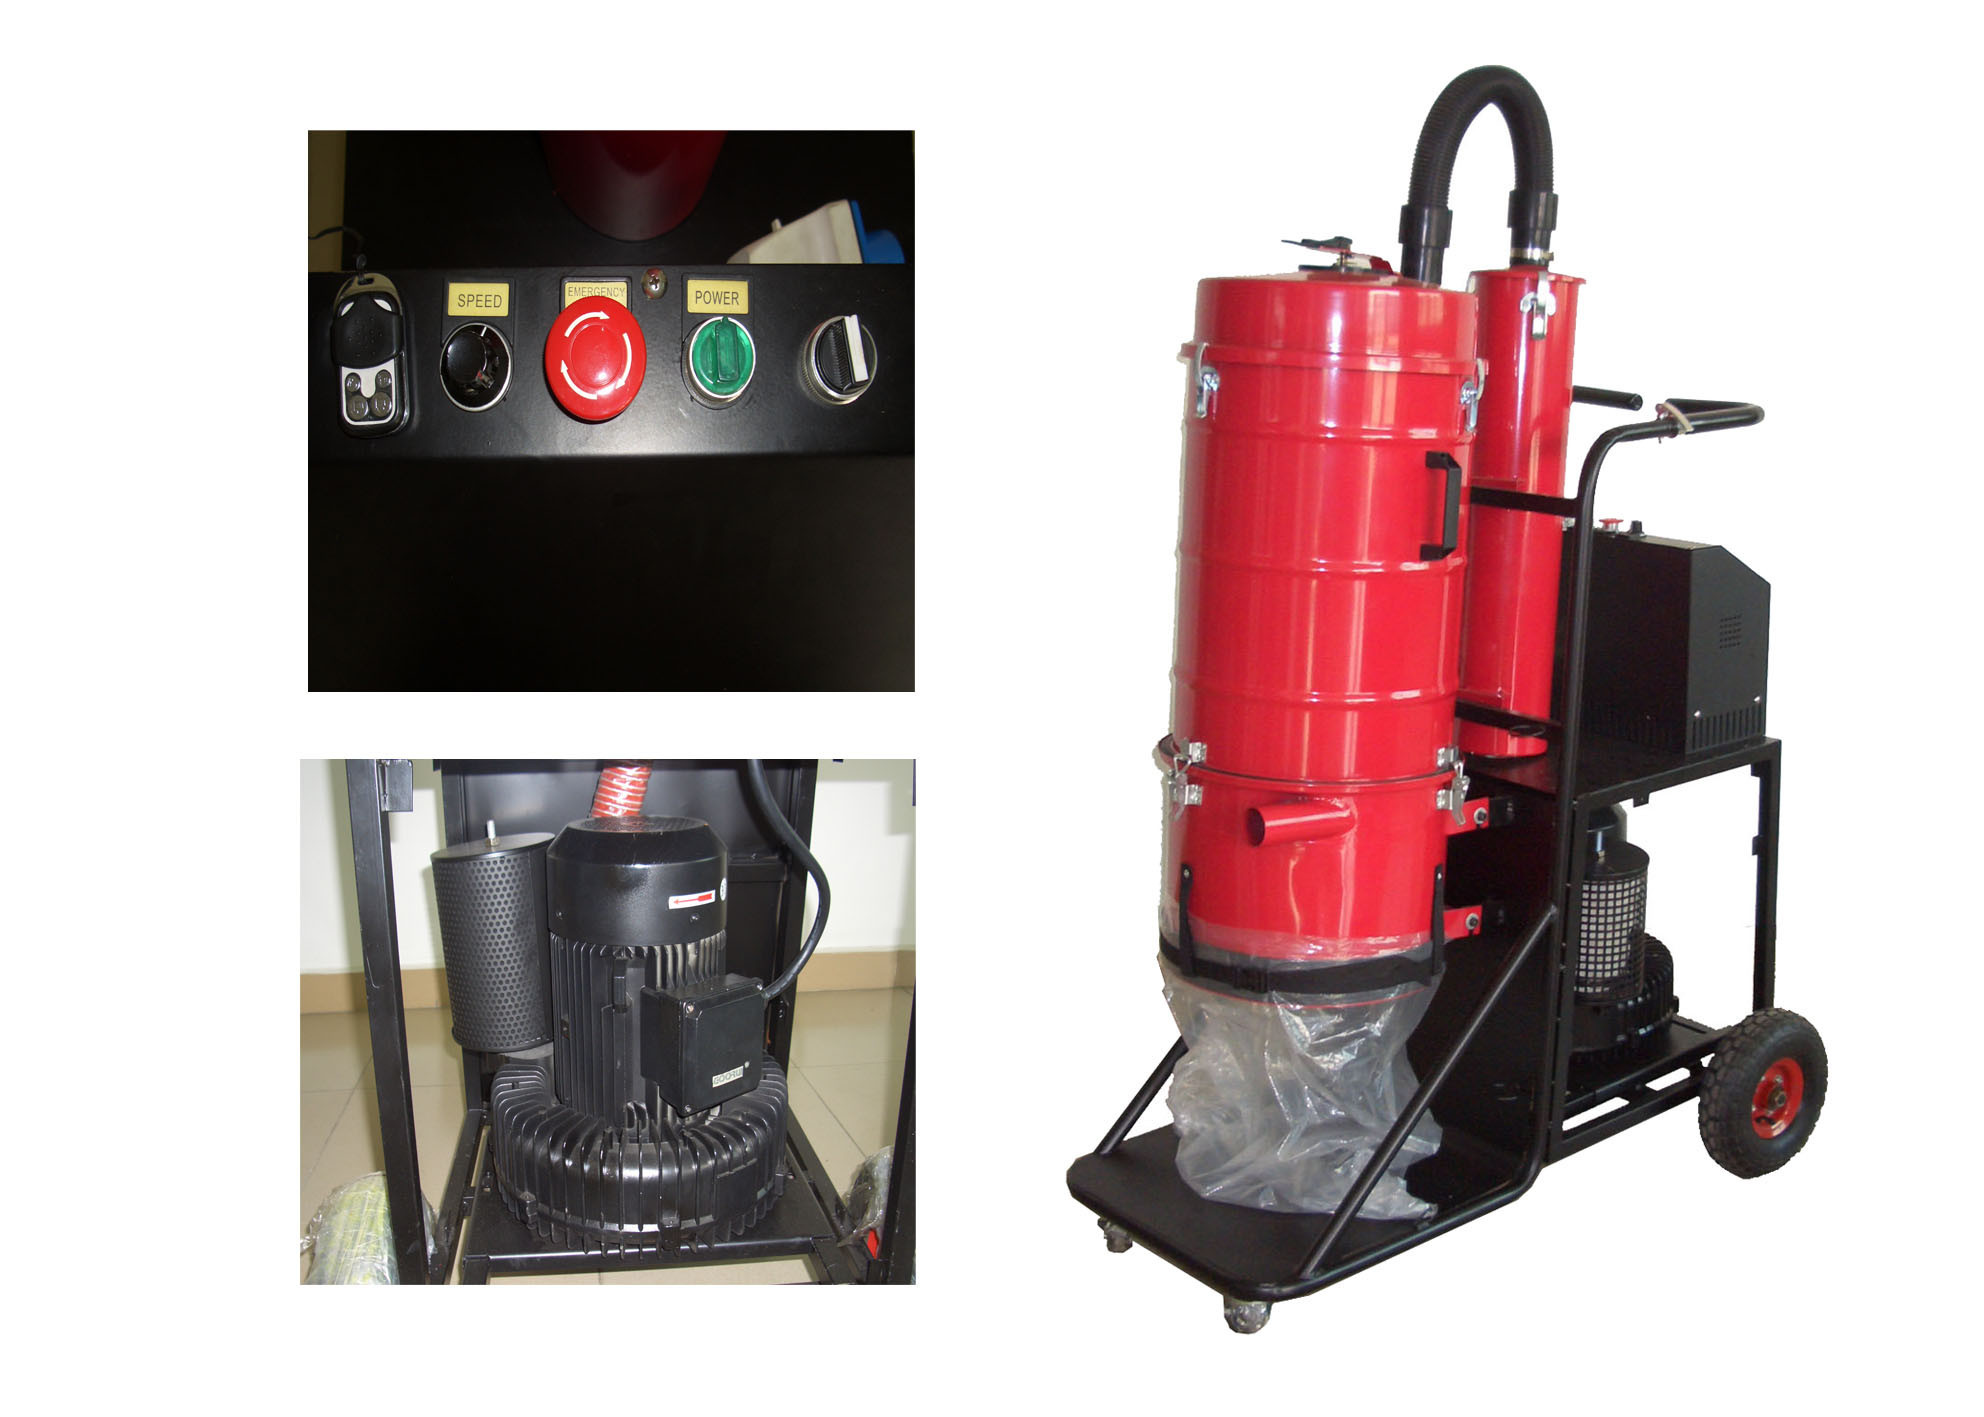 JS-470IS Industrial Vacuum Cleaner